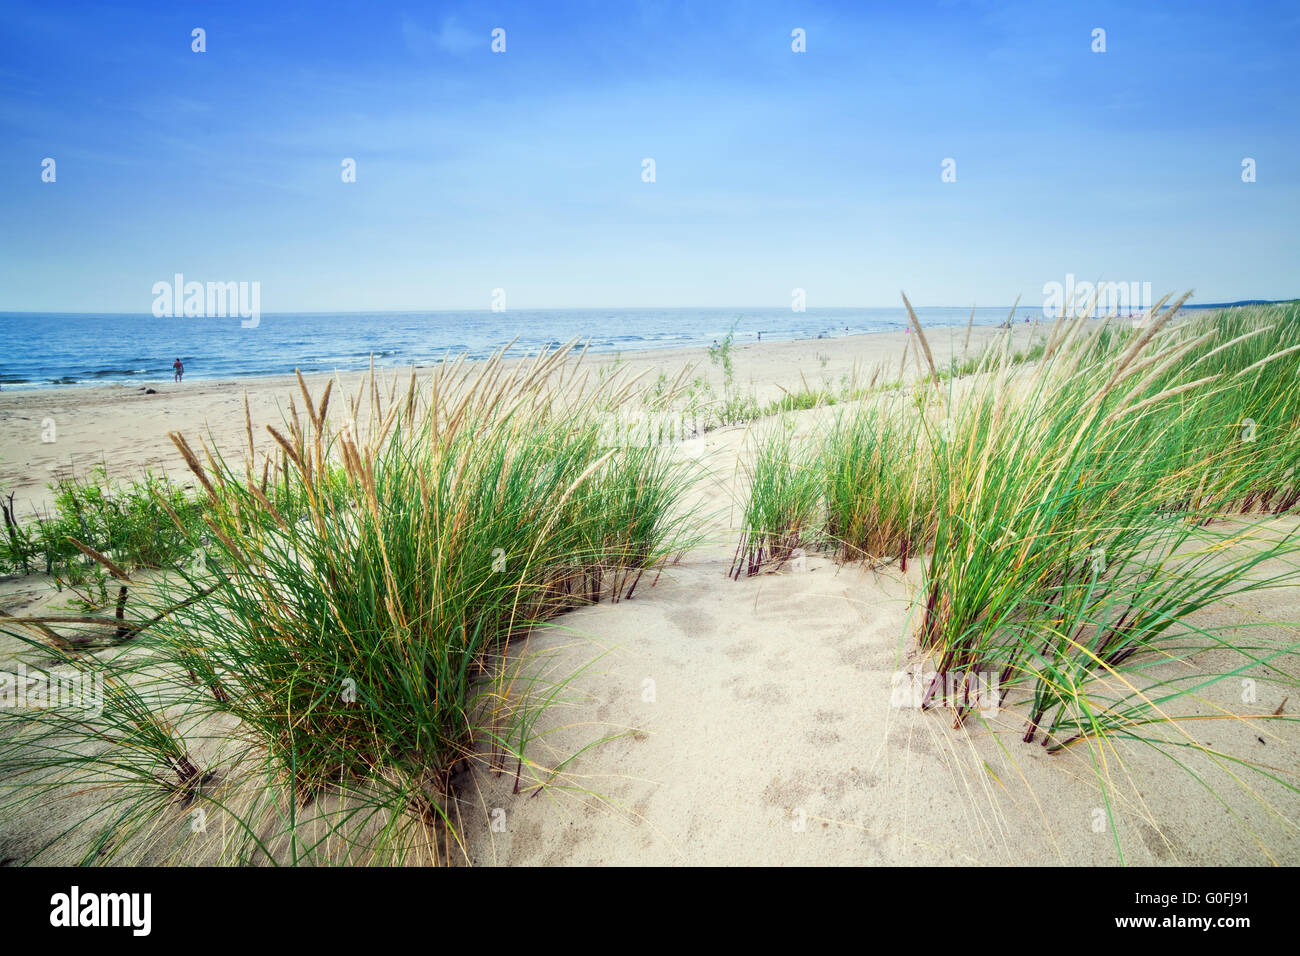 Calma spiaggia con dune e l'erba verde. Ocean in background Foto Stock